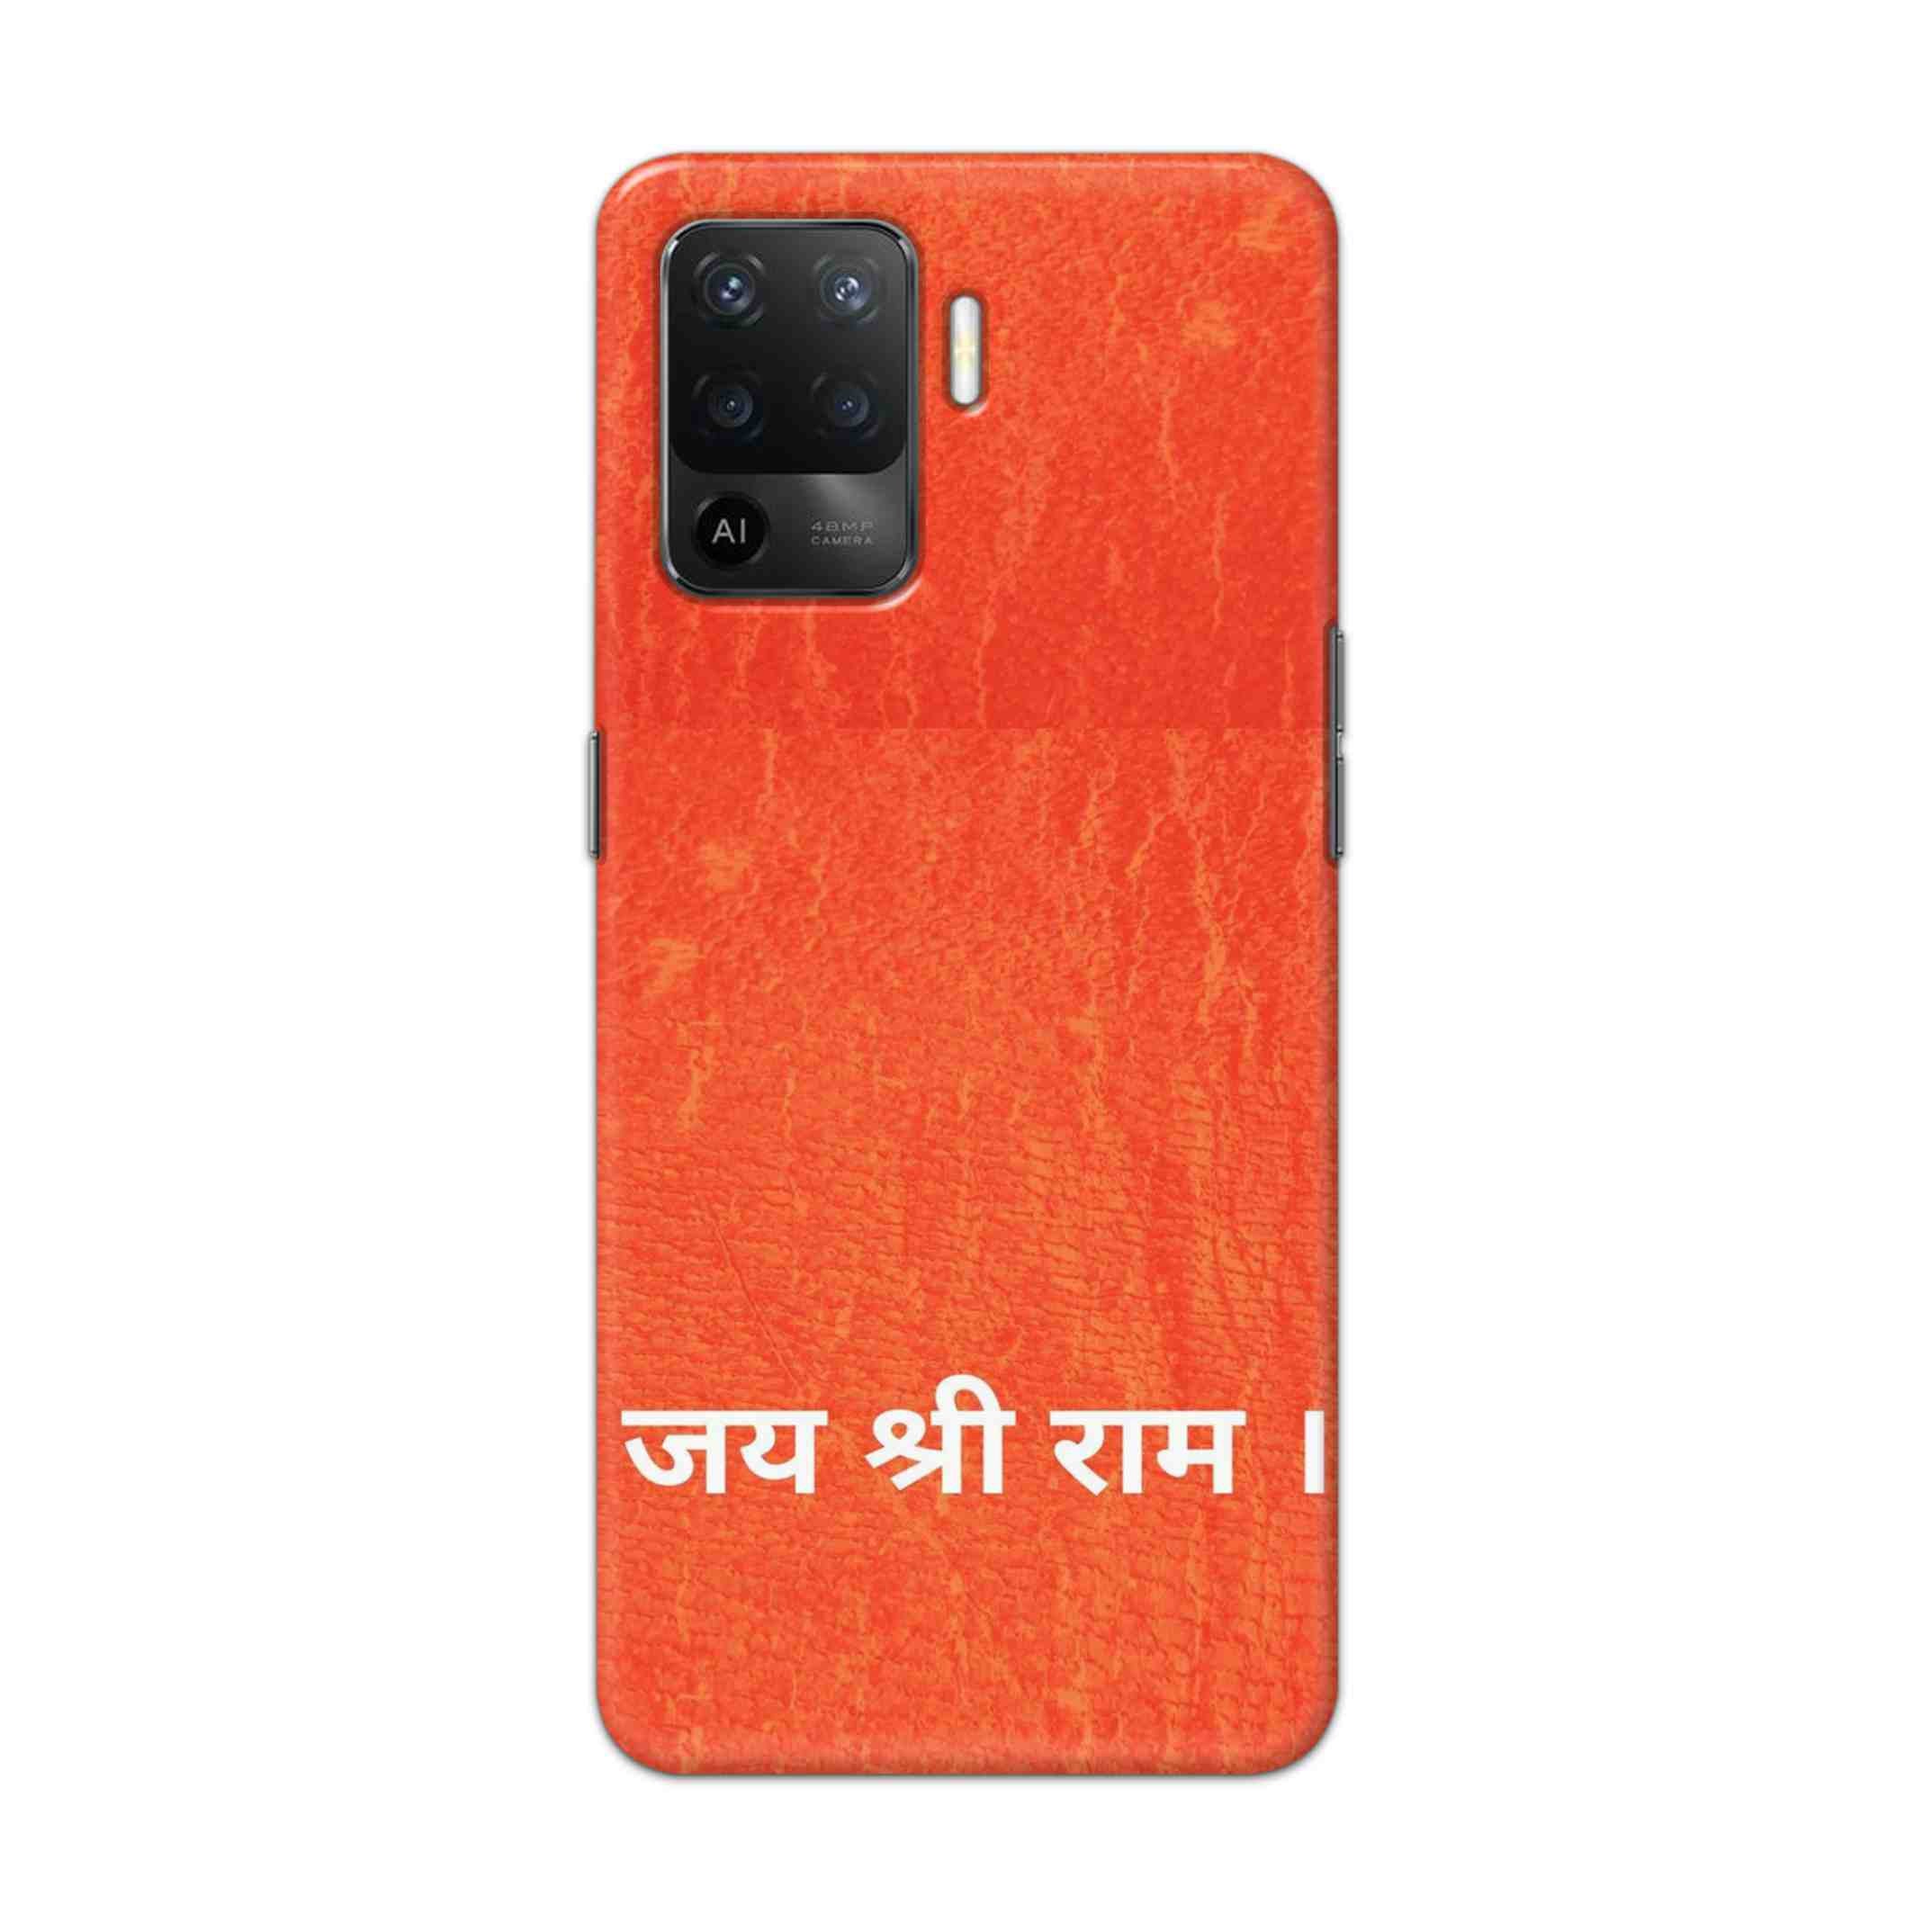 Buy Jai Shree Ram Hard Back Mobile Phone Case Cover For Oppo F19 Pro Online